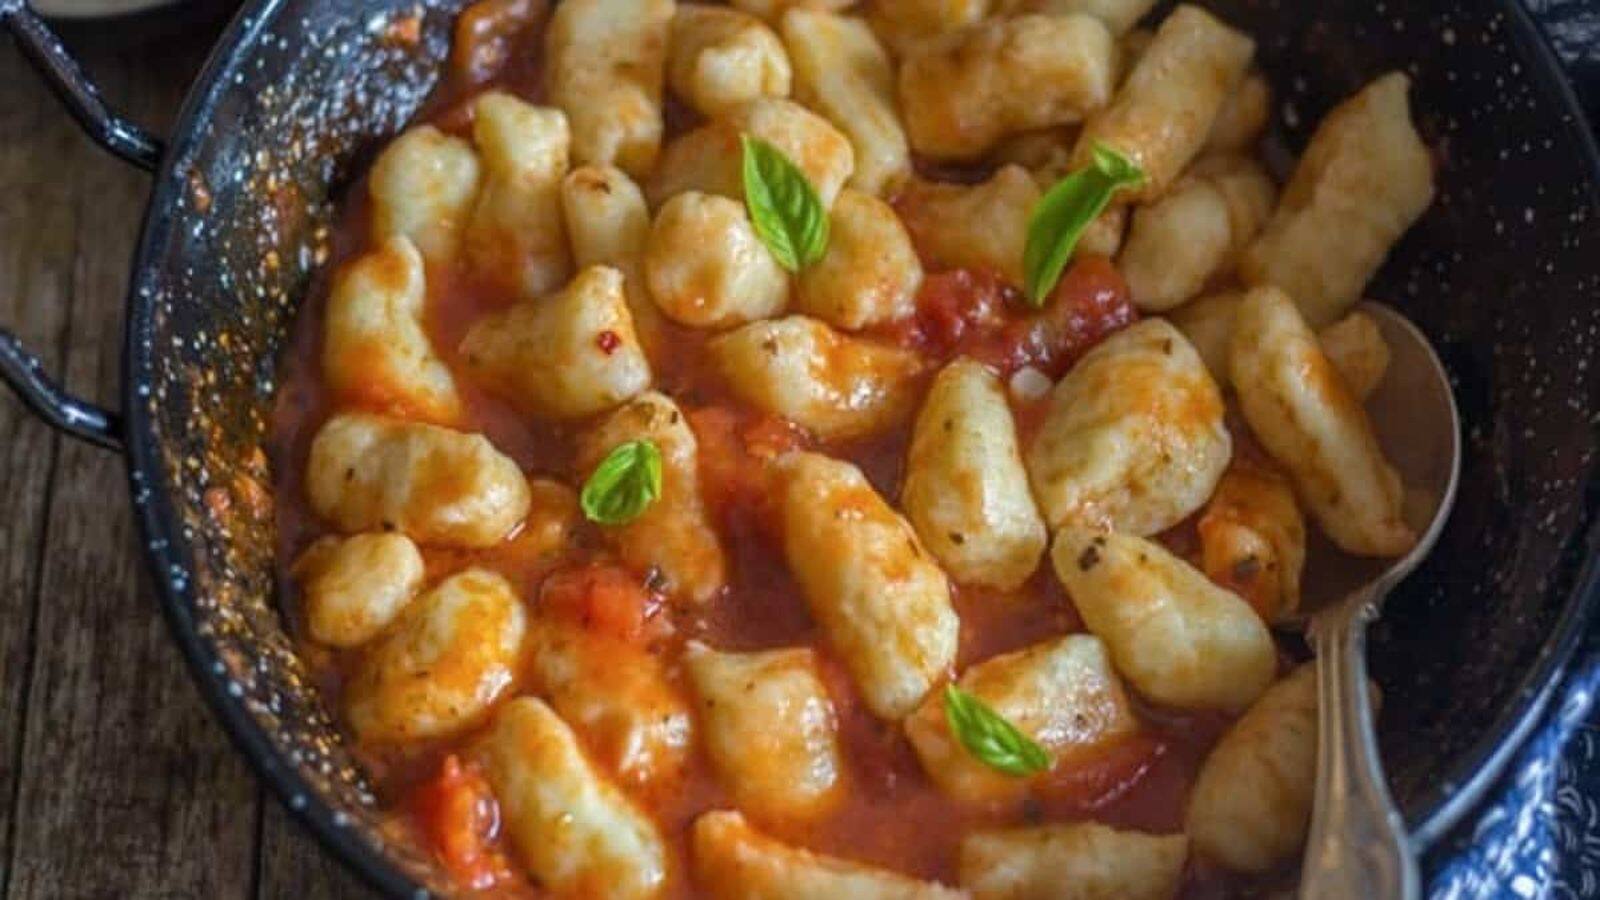 Recipe: Cook this Italian gnocchi at home